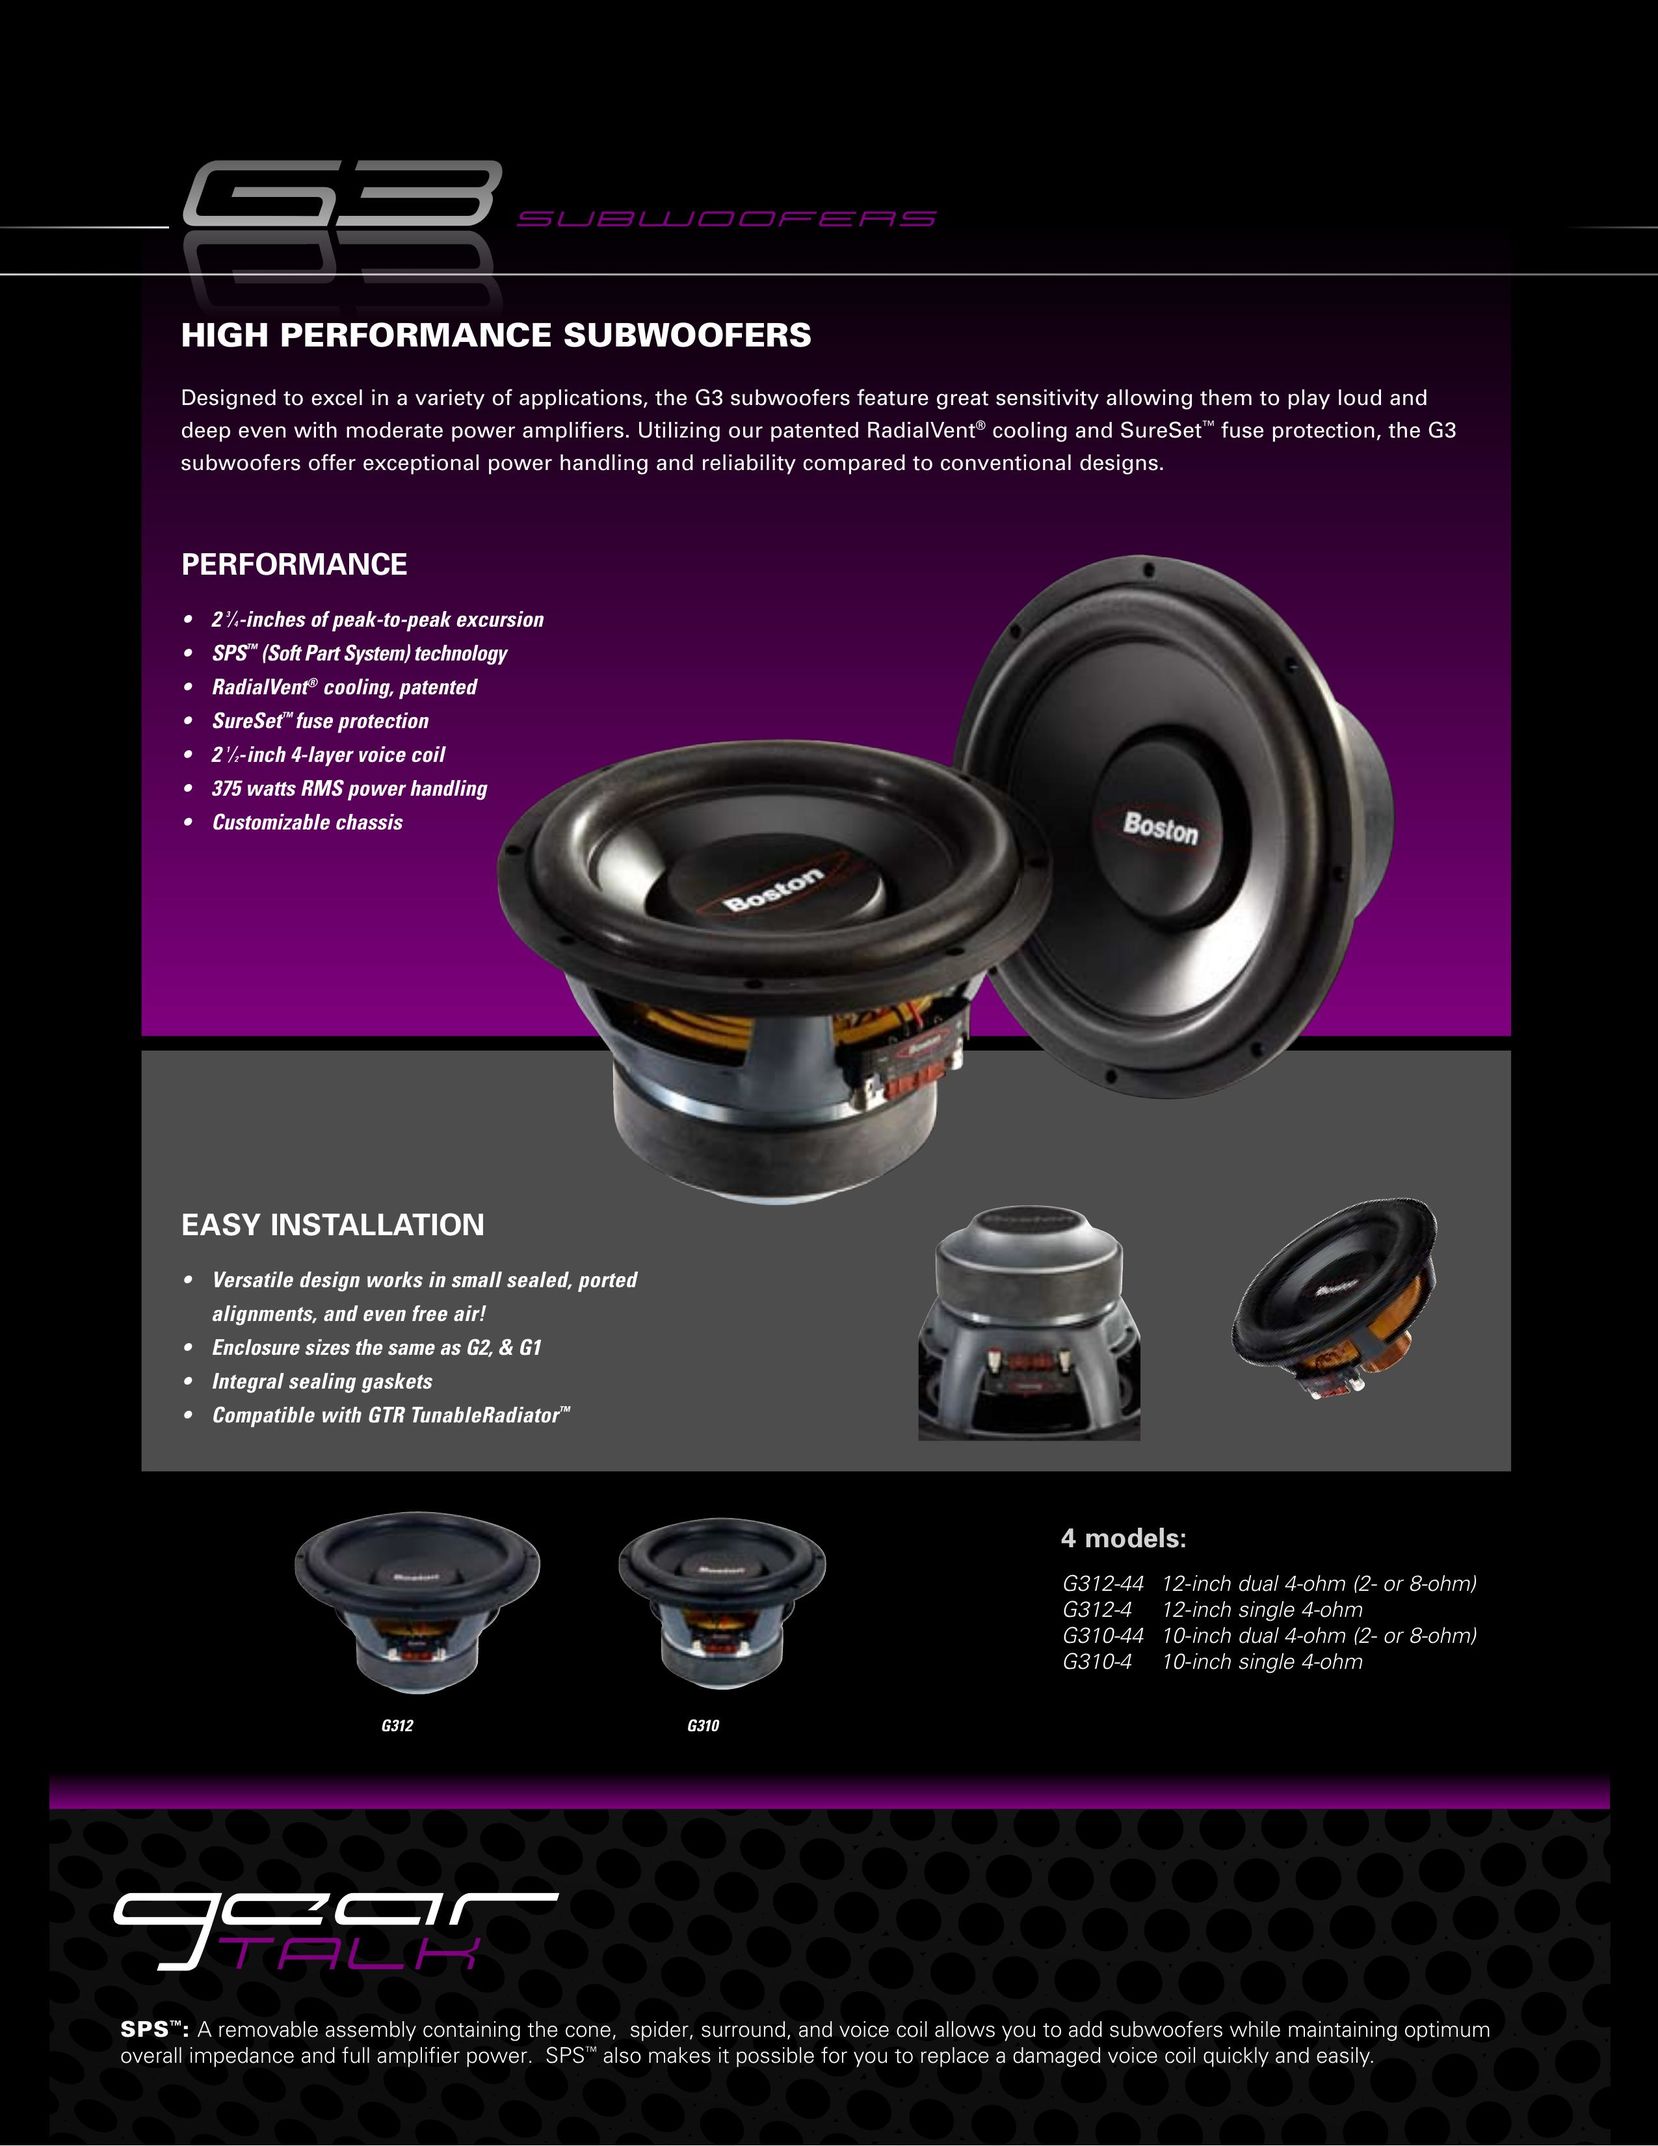 Boston Acoustics G312-44 Car Speaker User Manual